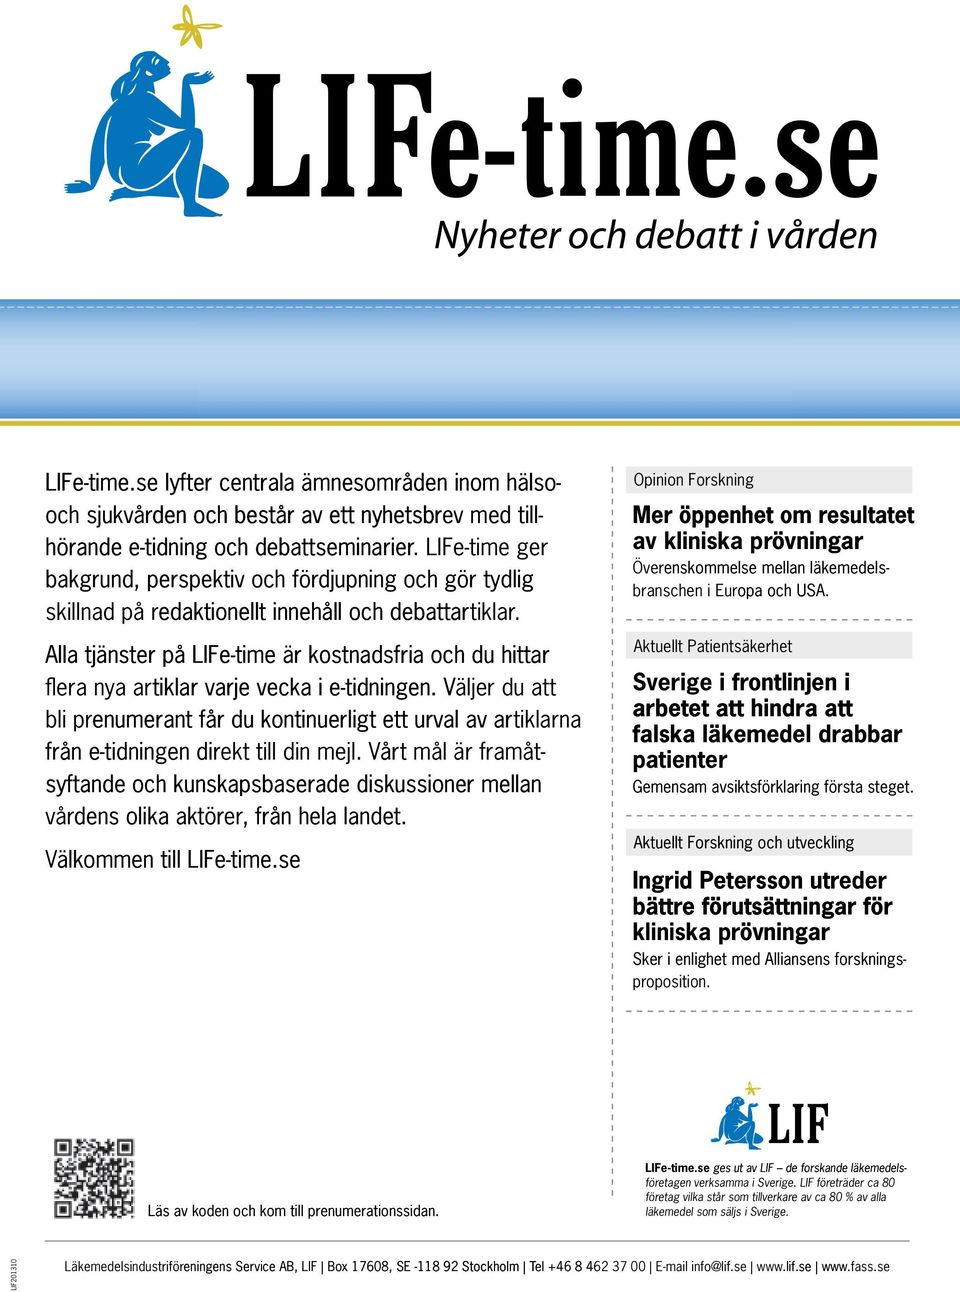 Alla tjänster på LIFe-time är kostnadsfria och du hittar flera nya artiklar varje vecka i e-tidningen.